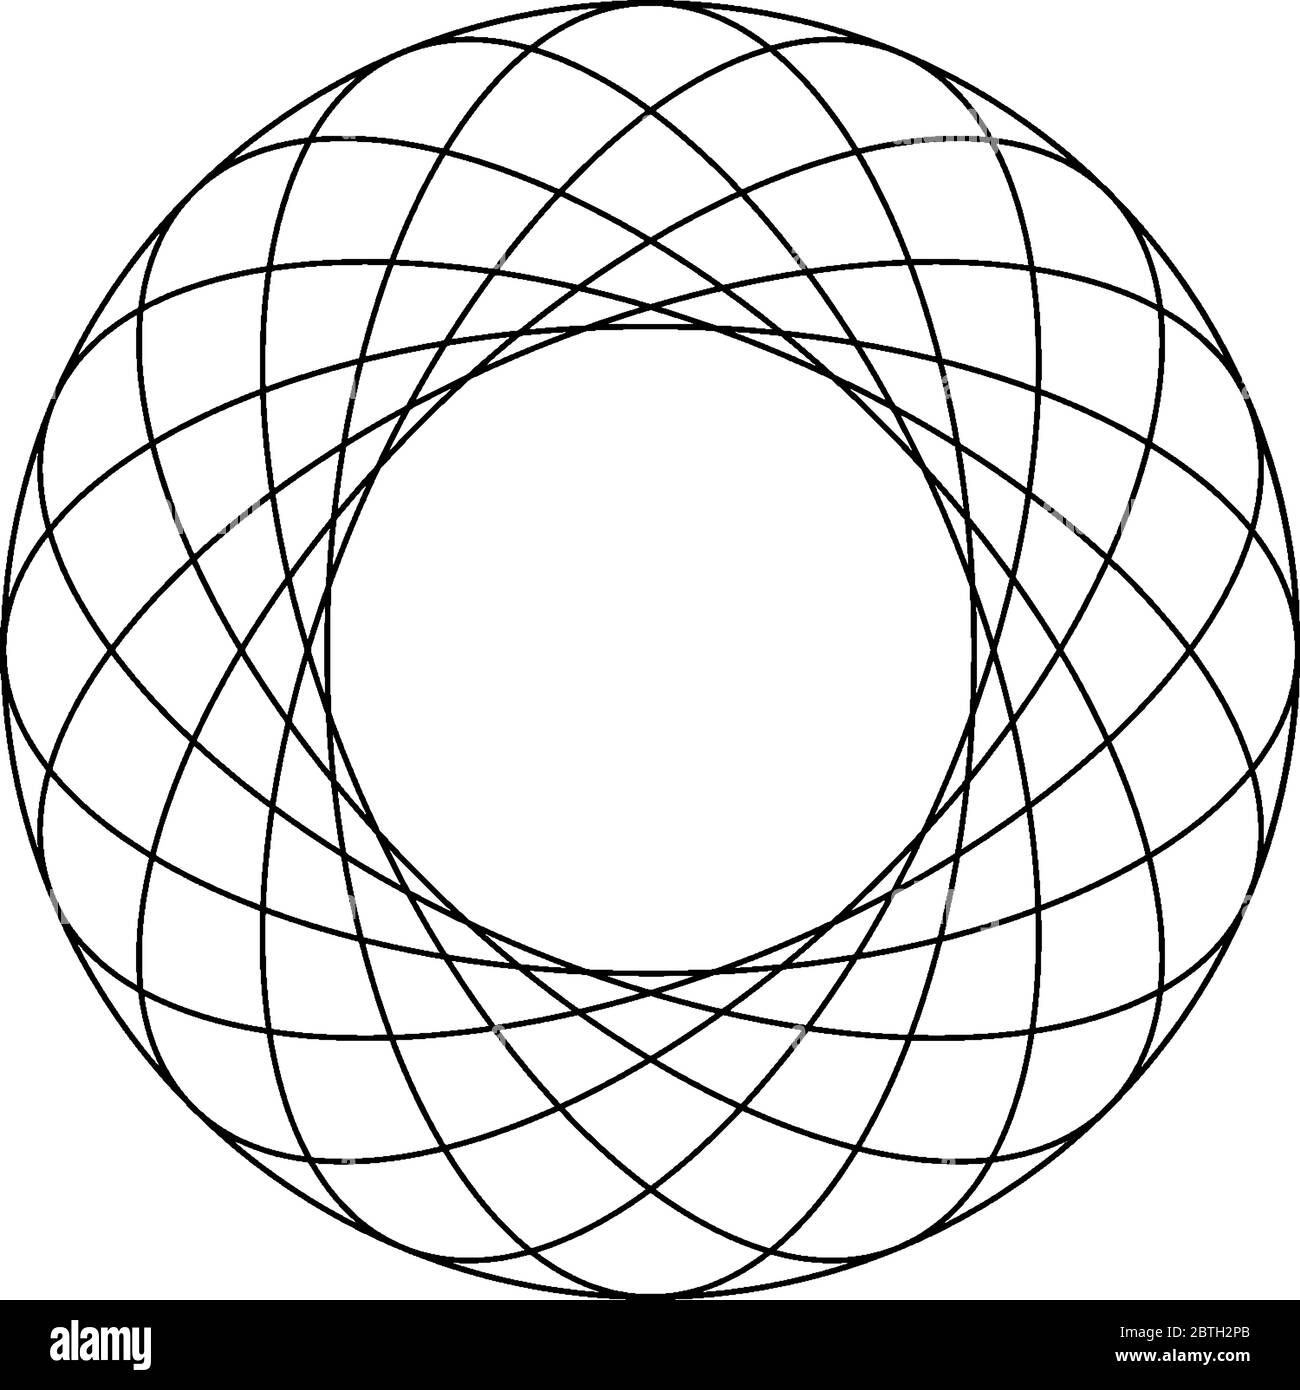 Otto ellissi concentriche ruotate all'interno di un cerchio che toccano esternamente la superficie del cerchio con spaziatura uguale, disegno di linee vintage o incisione Illustrazione Vettoriale